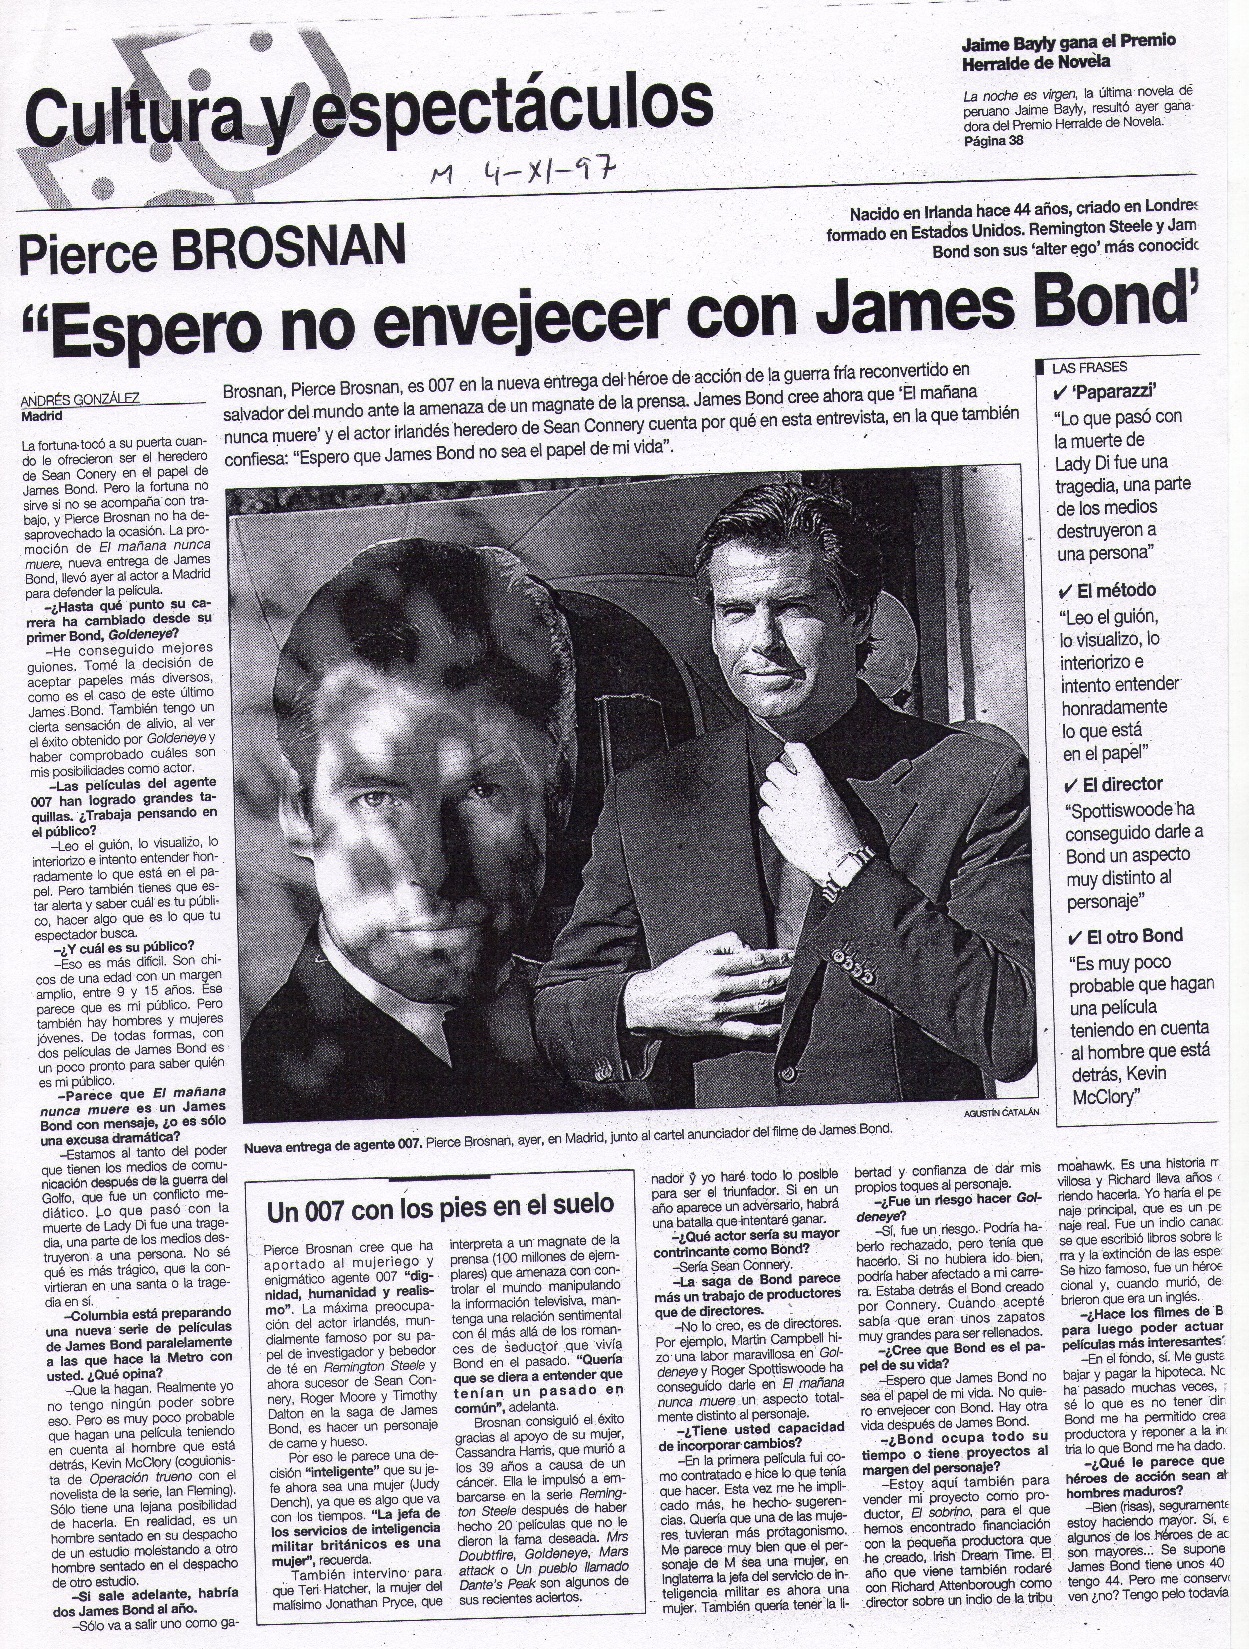 18 1997 11 04 El Periodico de Aragon Pierce Brosnan